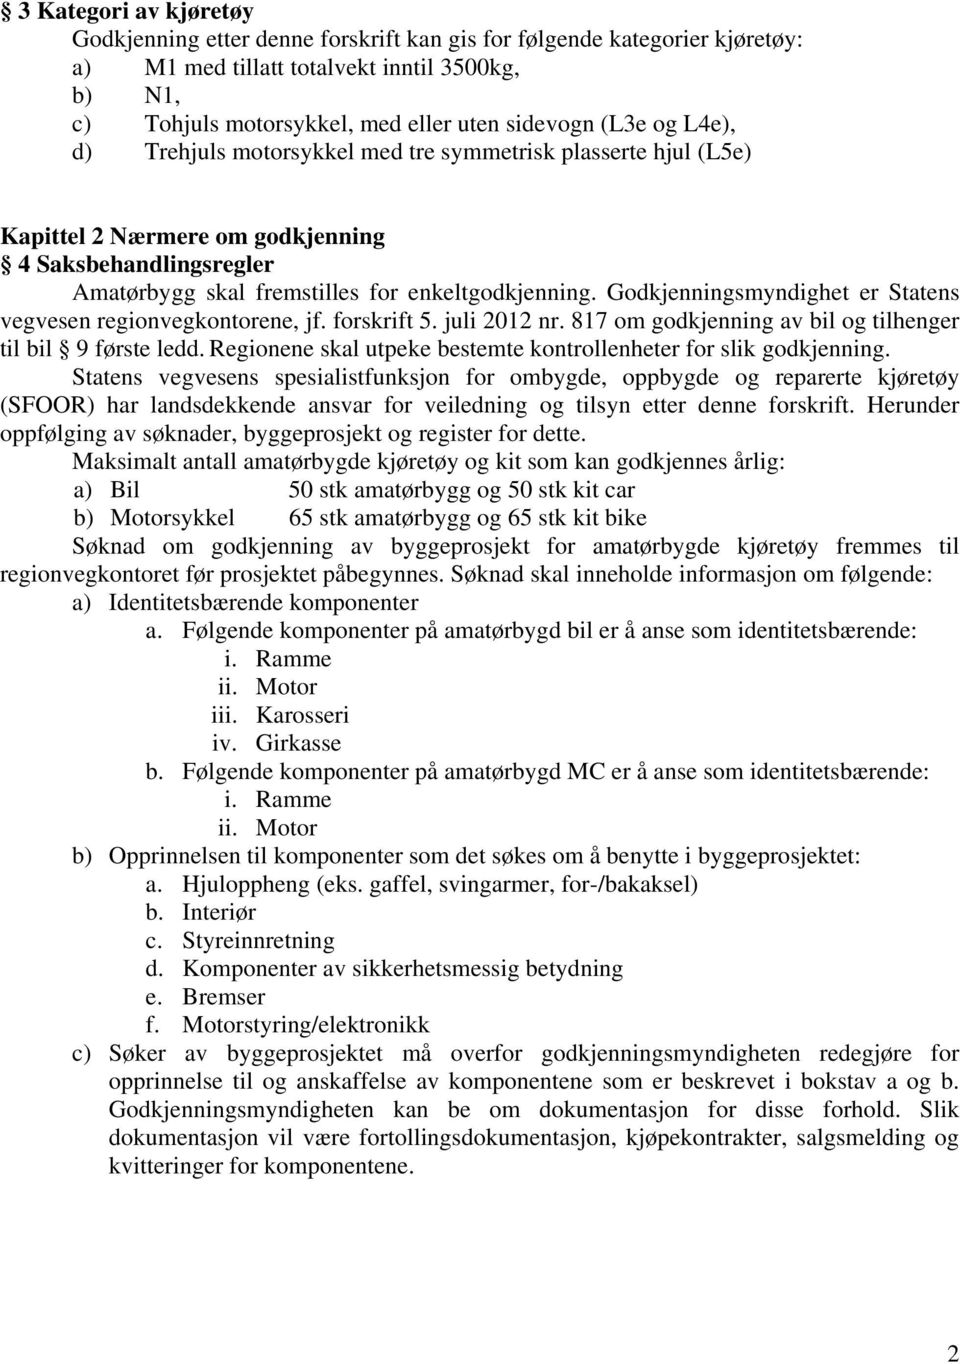 Godkjenningsmyndighet er Statens vegvesen regionvegkontorene, jf. forskrift 5. juli 2012 nr. 817 om godkjenning av bil og tilhenger til bil 9 første ledd.